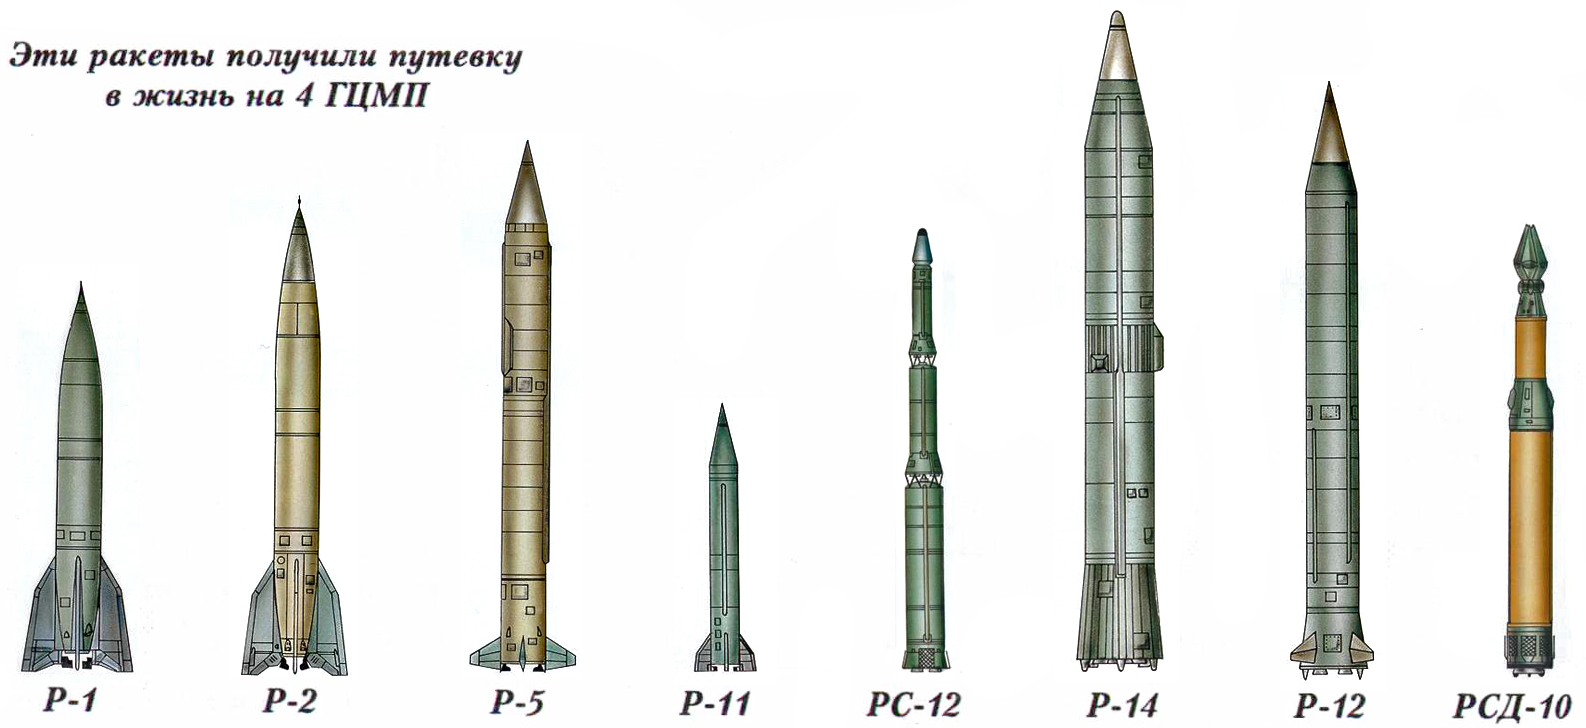 Ракета р-17 (8к14) «скад-в» ракетного комплекса 9к72 «эльбрус» / ракеты / рлс спрн и пво / вооружение / арсенал-инфо.рф